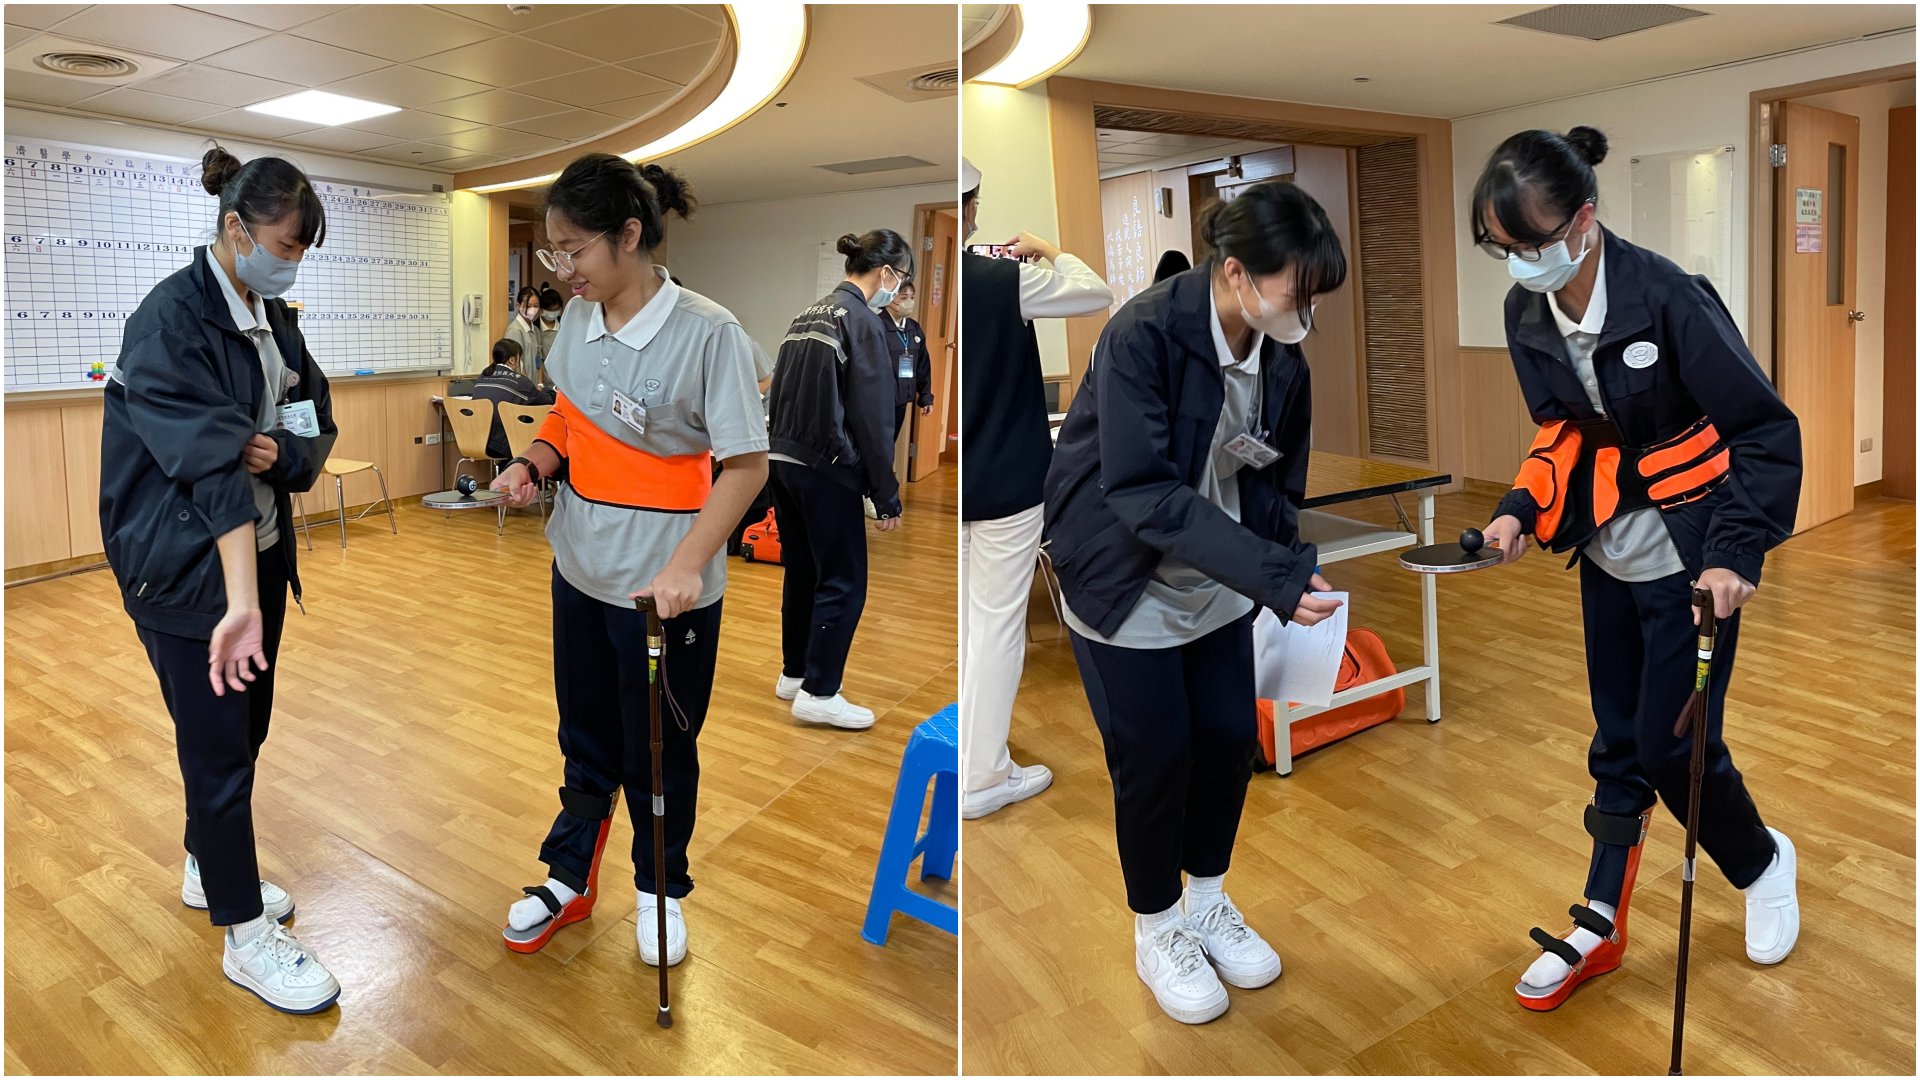 經由手腳的束縛限制肌力及活動度，持乒乓球拍運球的過程，護生體驗半身麻痺病人行進的情景。